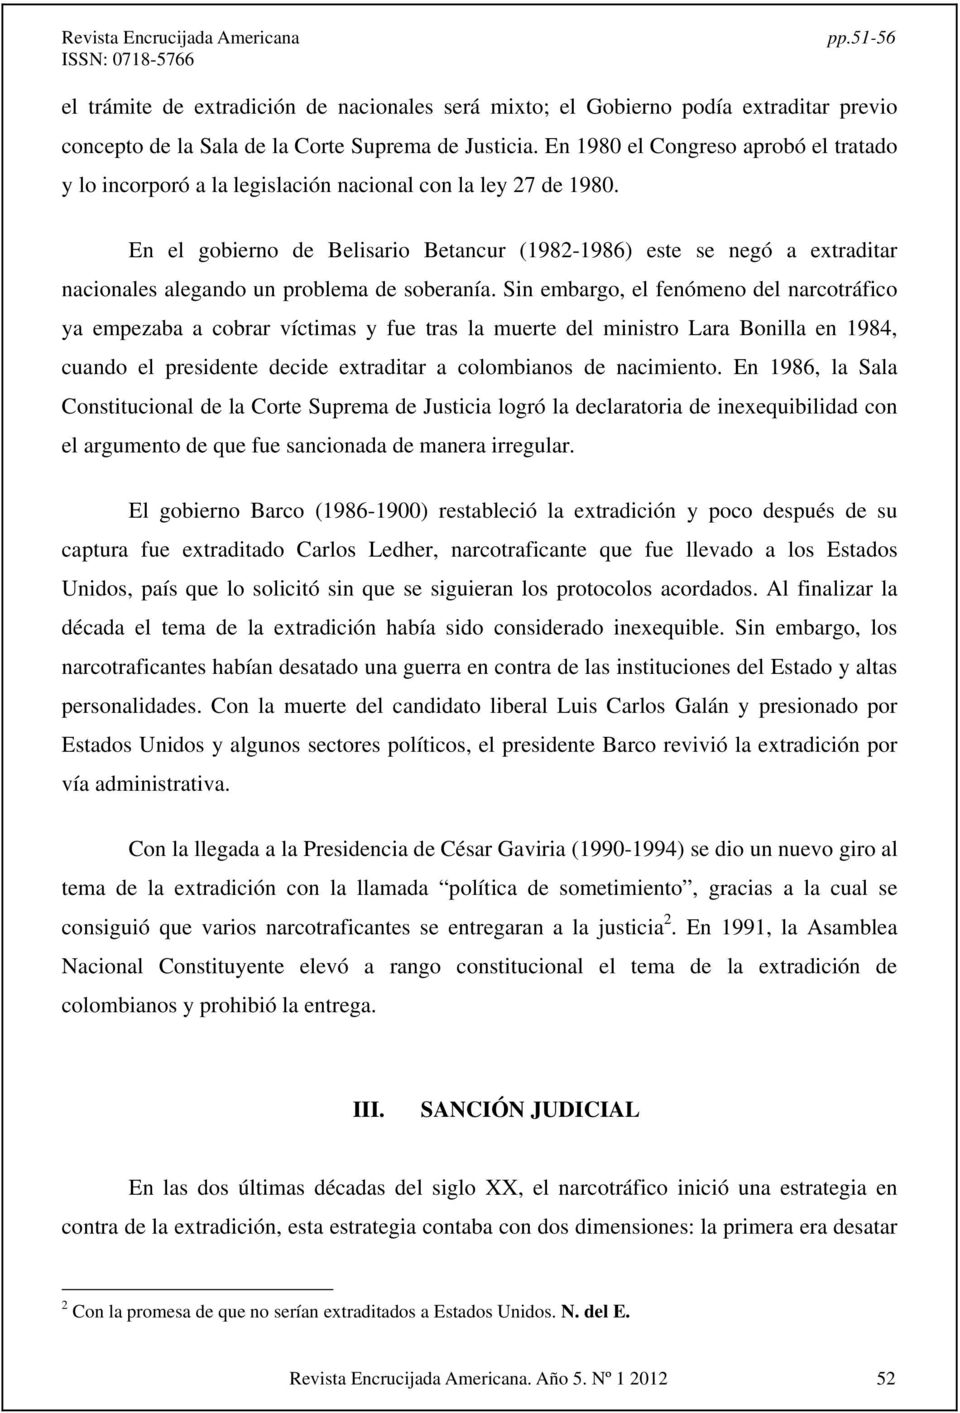 En el gobierno de Belisario Betancur (1982-1986) este se negó a extraditar nacionales alegando un problema de soberanía.